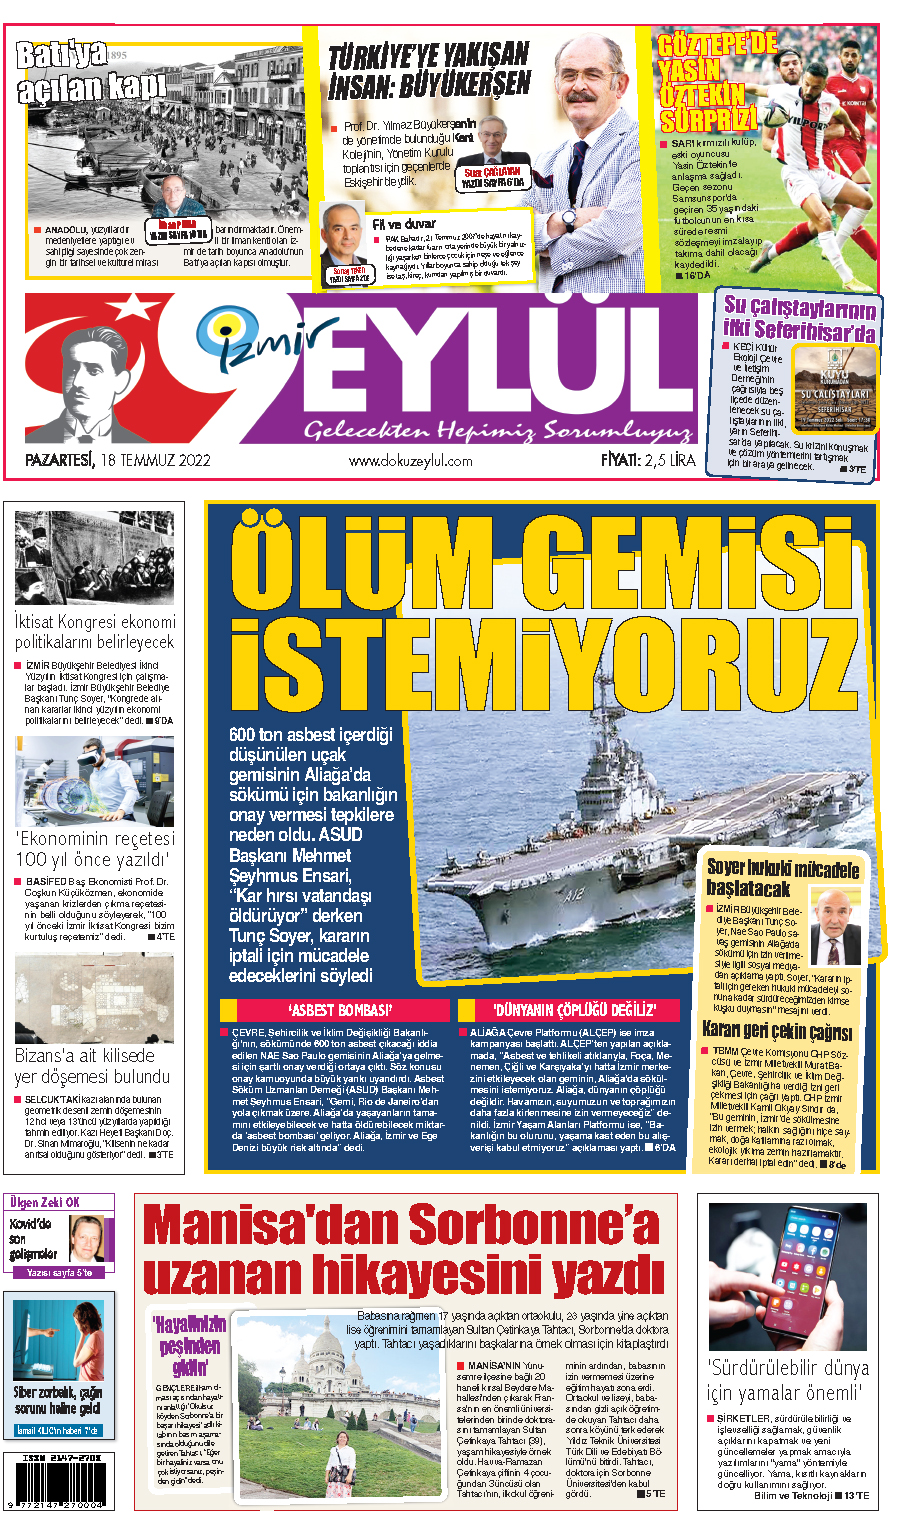 Dokuz Eylül Gazetesi | İzmir, Türkiye, Dünya'dan Güncel Haberler - 18.07.2022 Manşeti